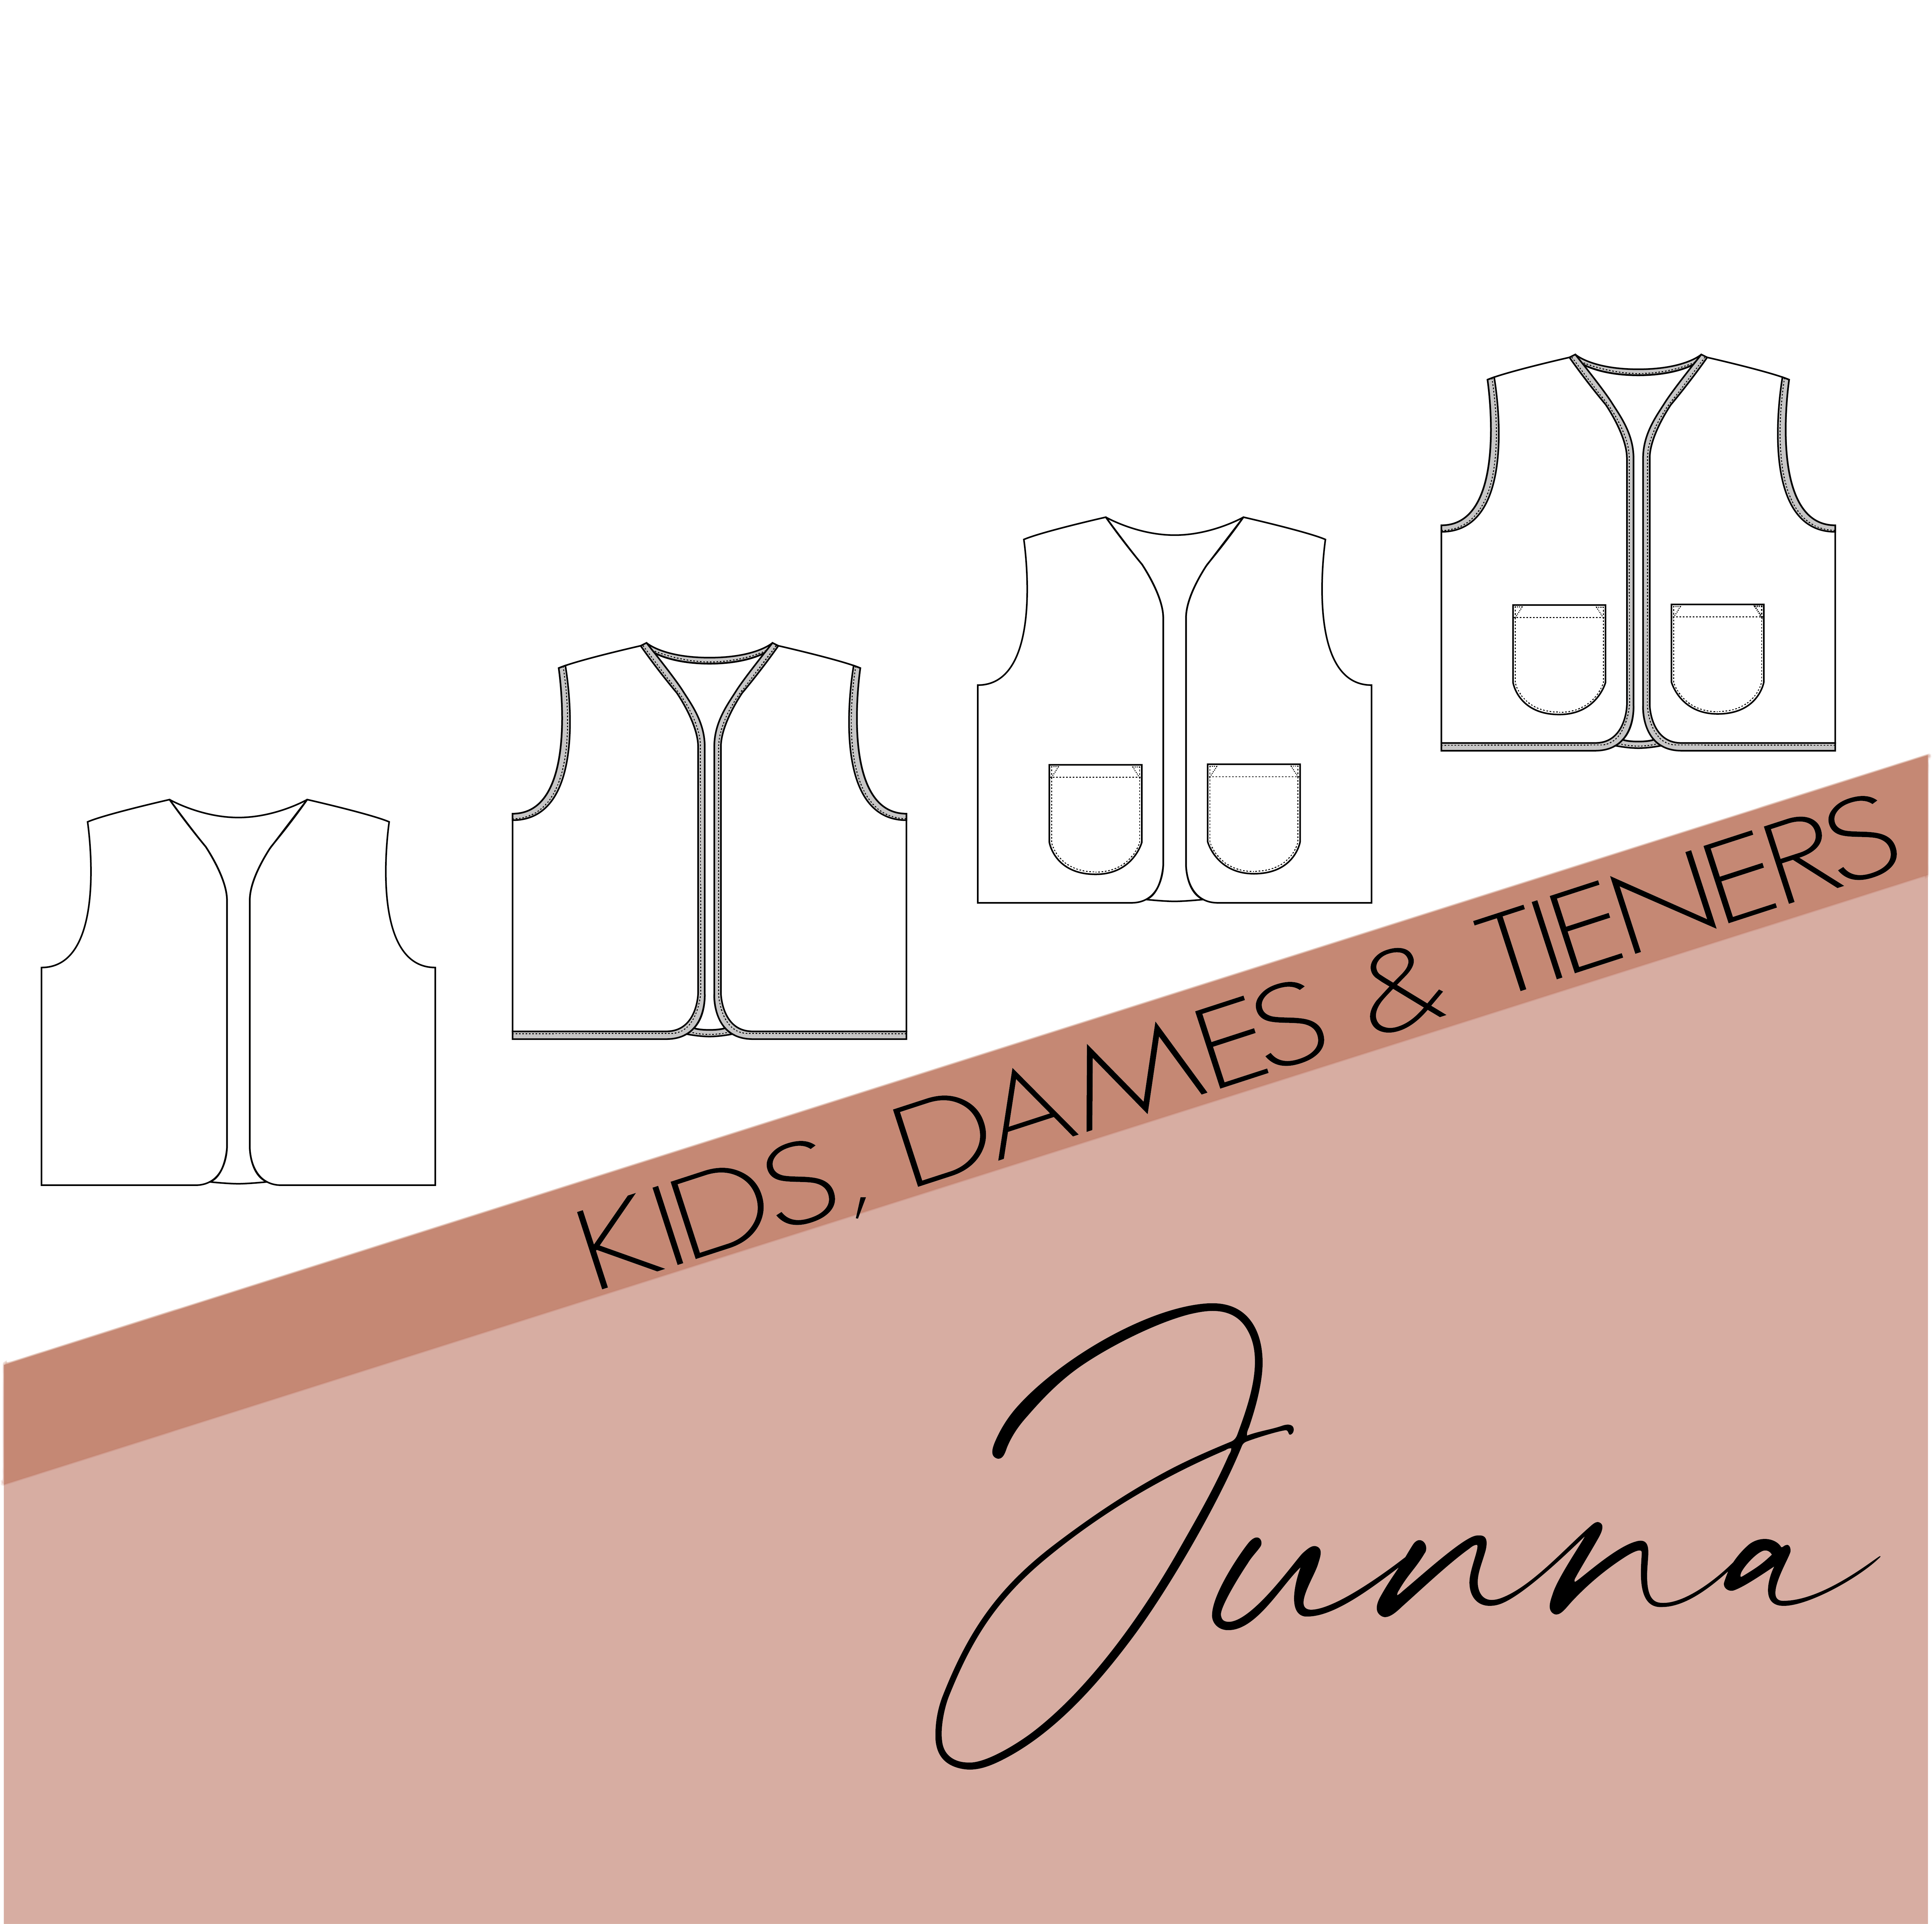 Junna - kids, dames en tieners